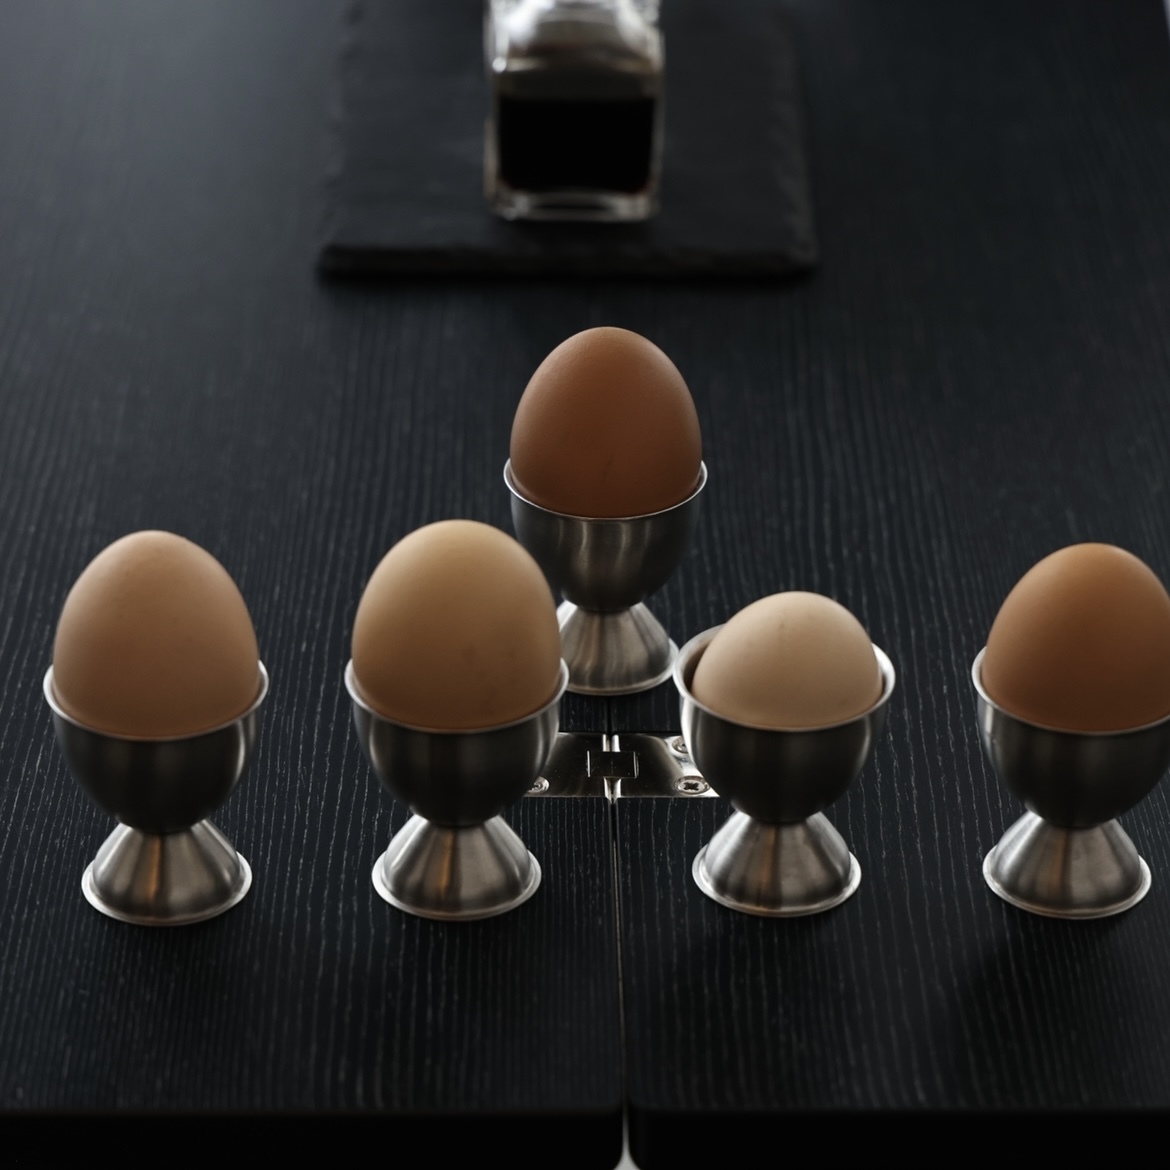 希少な卵がこんなにも多種類並ぶこと滅多にないですよね。